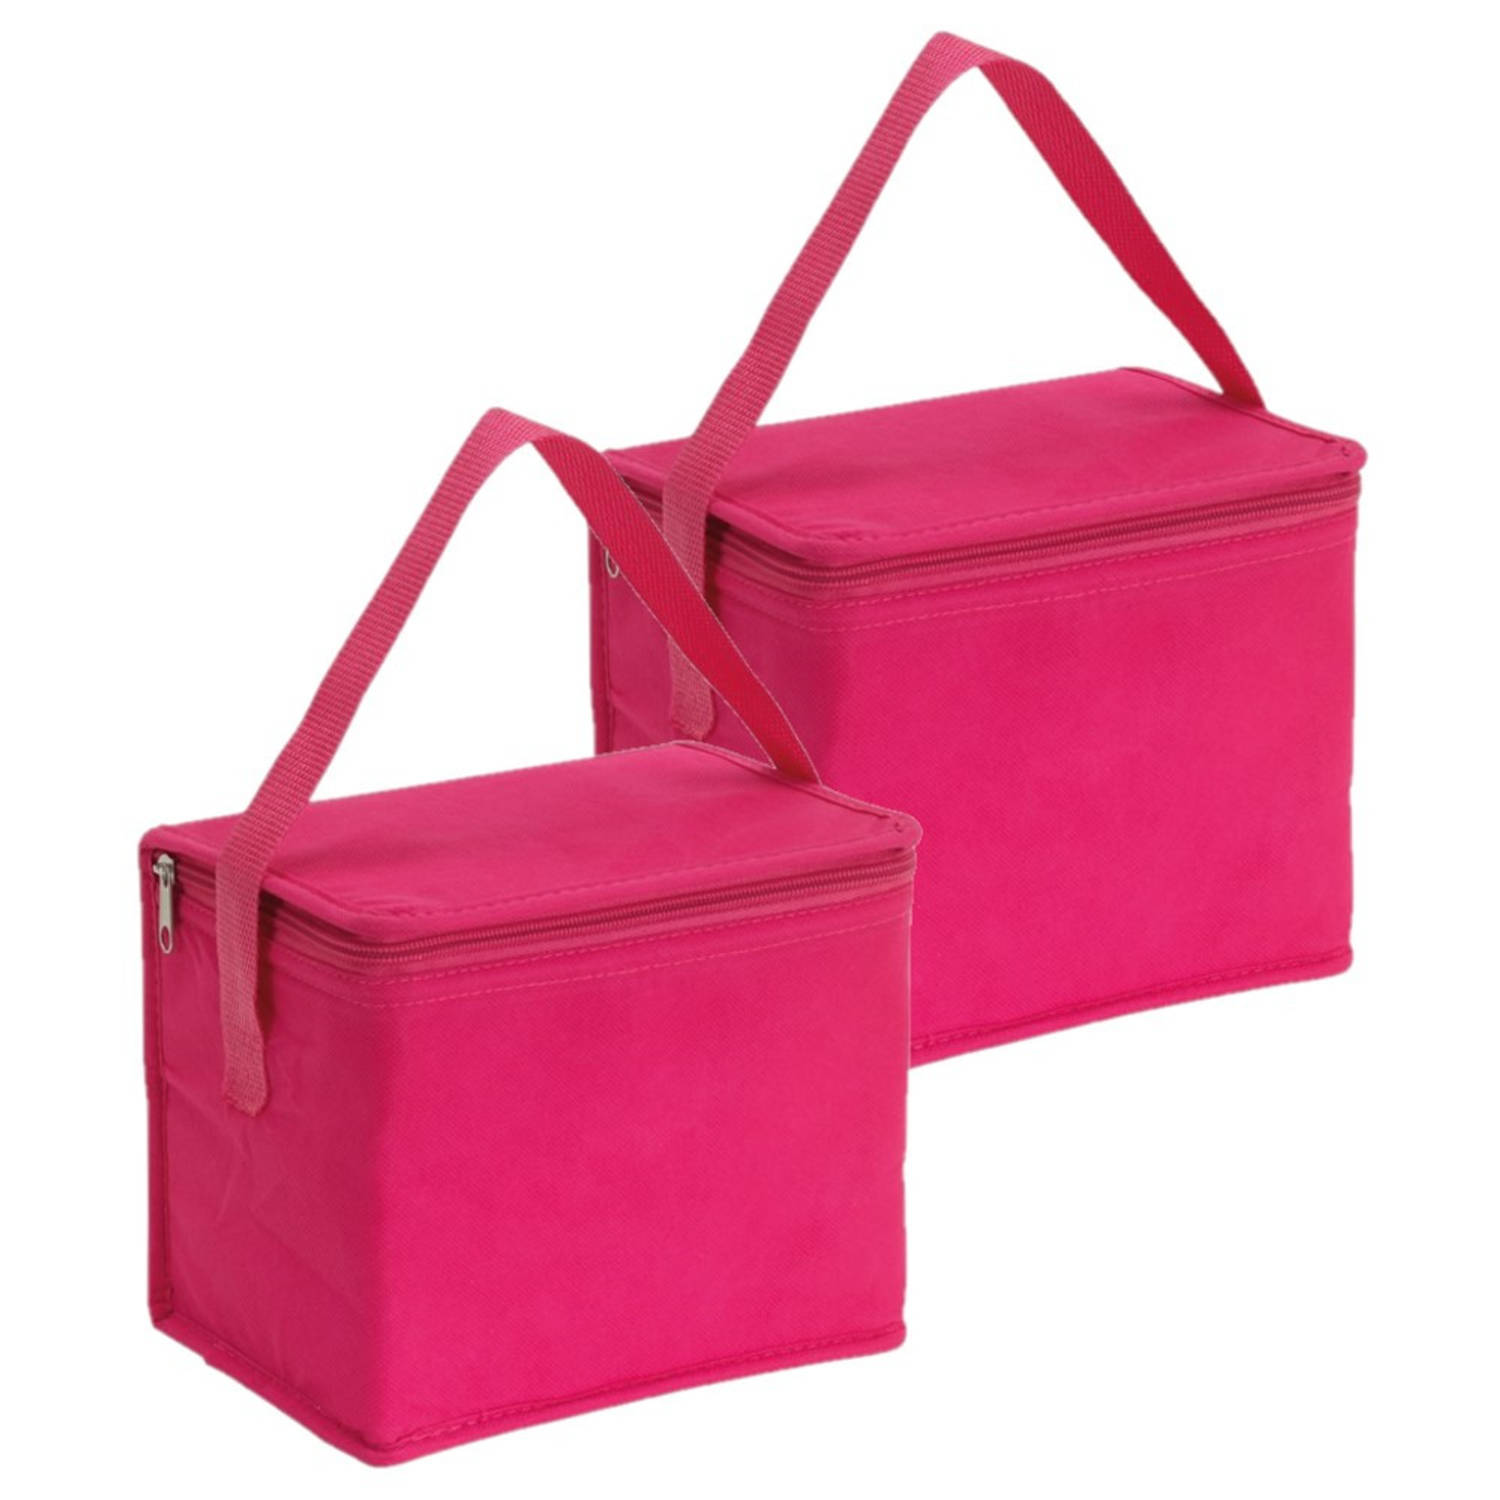 2x stuks kleine koeltassen voor lunch roze 20 x 13 x 17 cm 4.5 liter - Koeltas